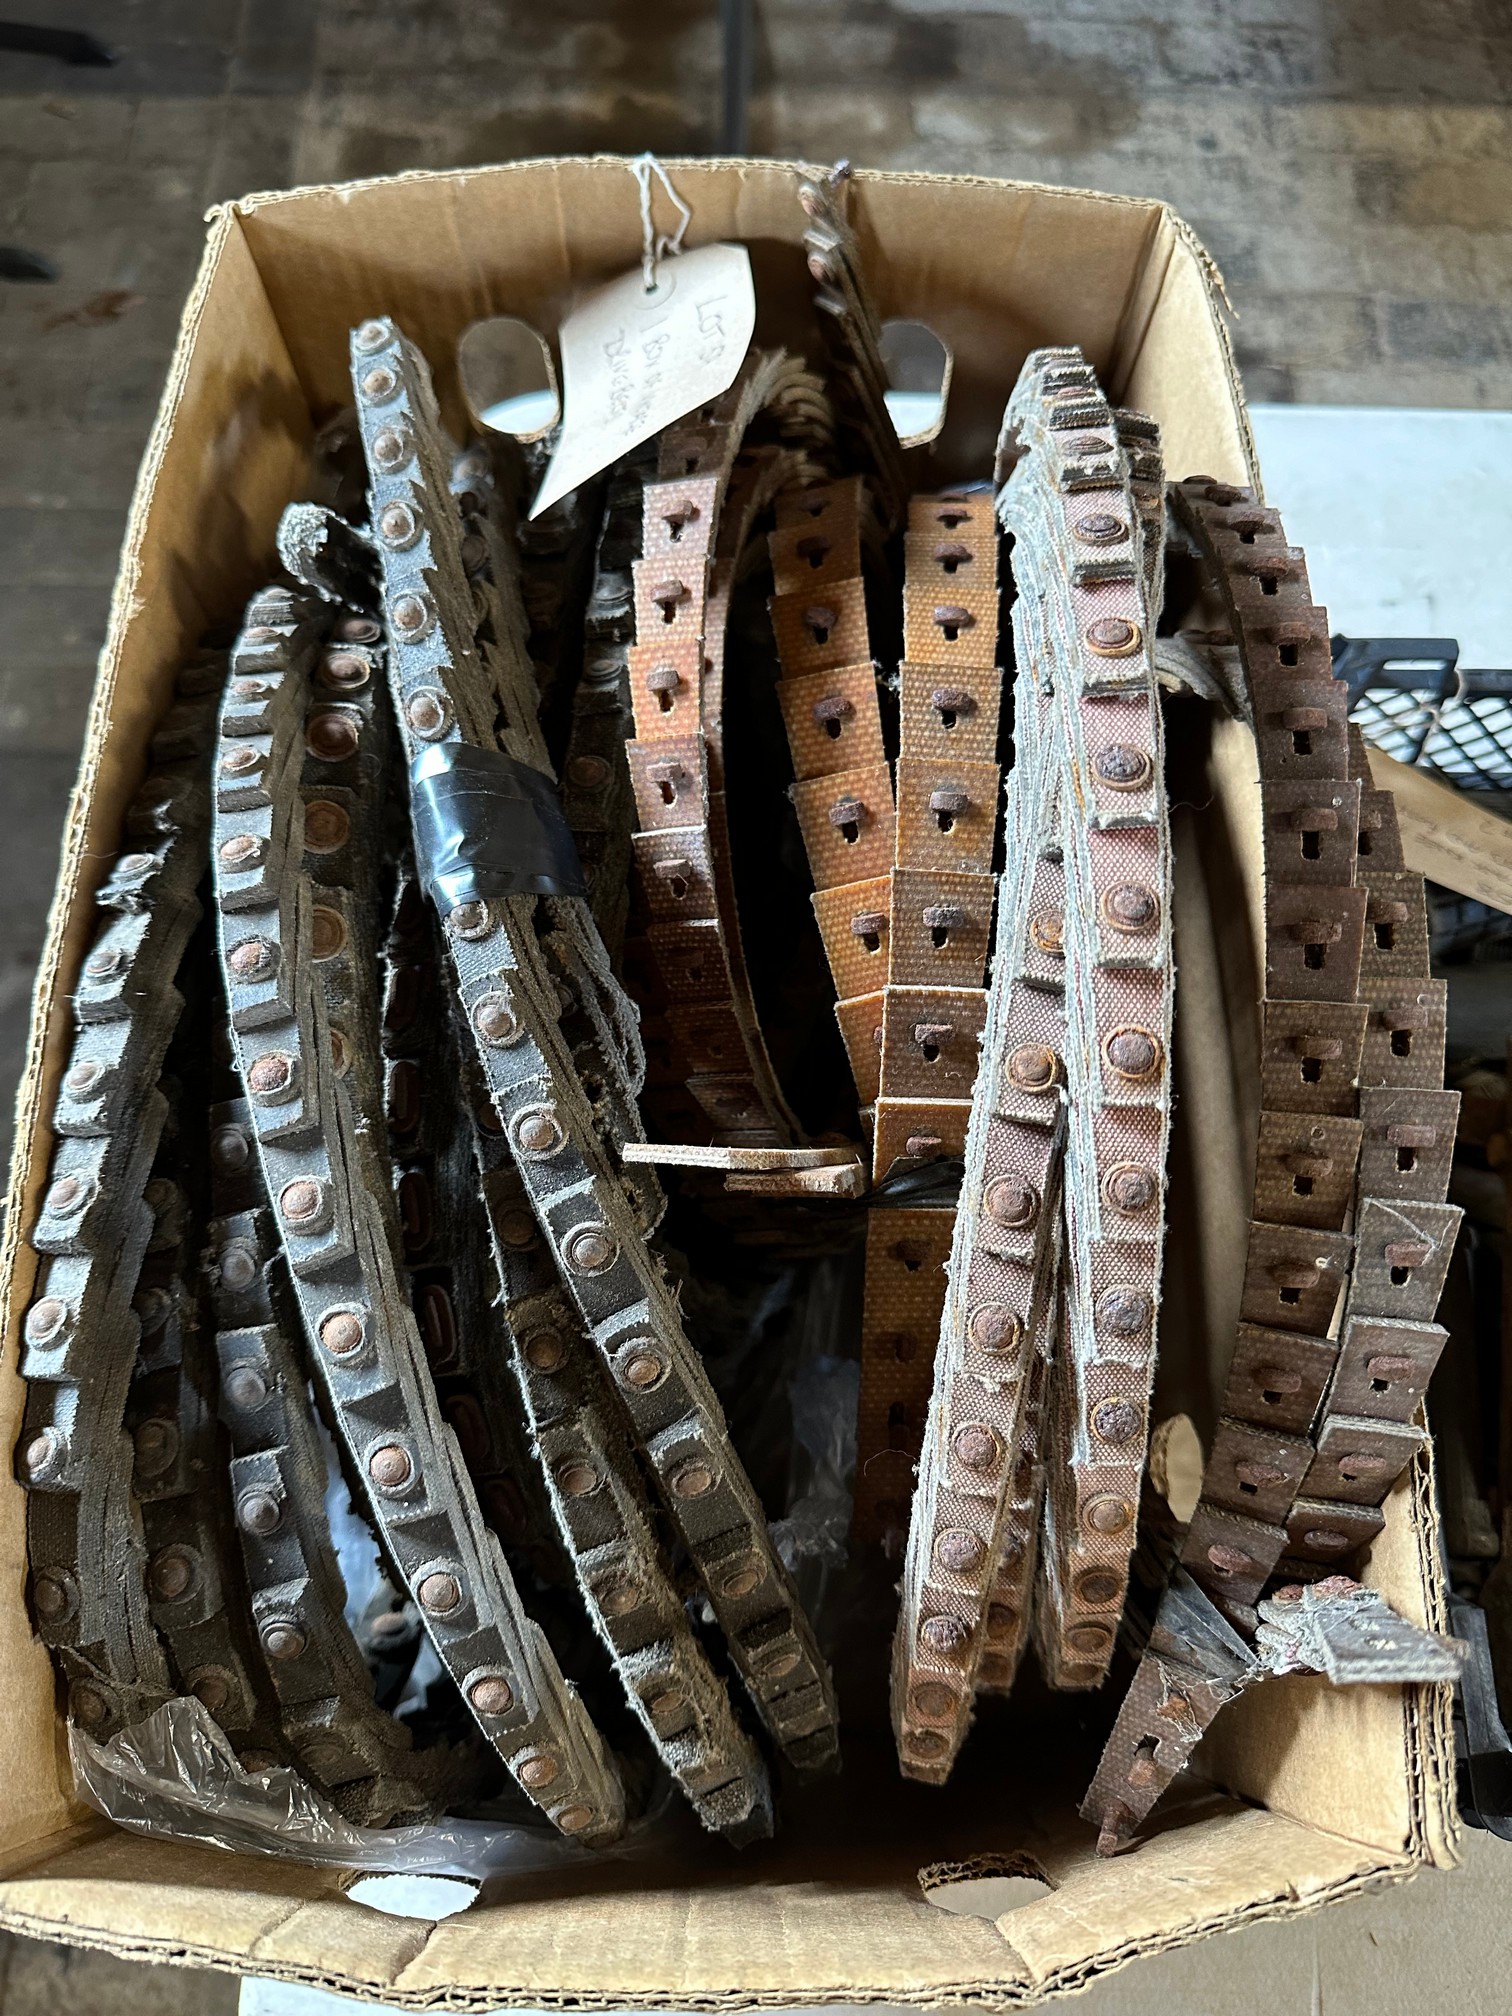 A box of vintage drive 'V' belts.